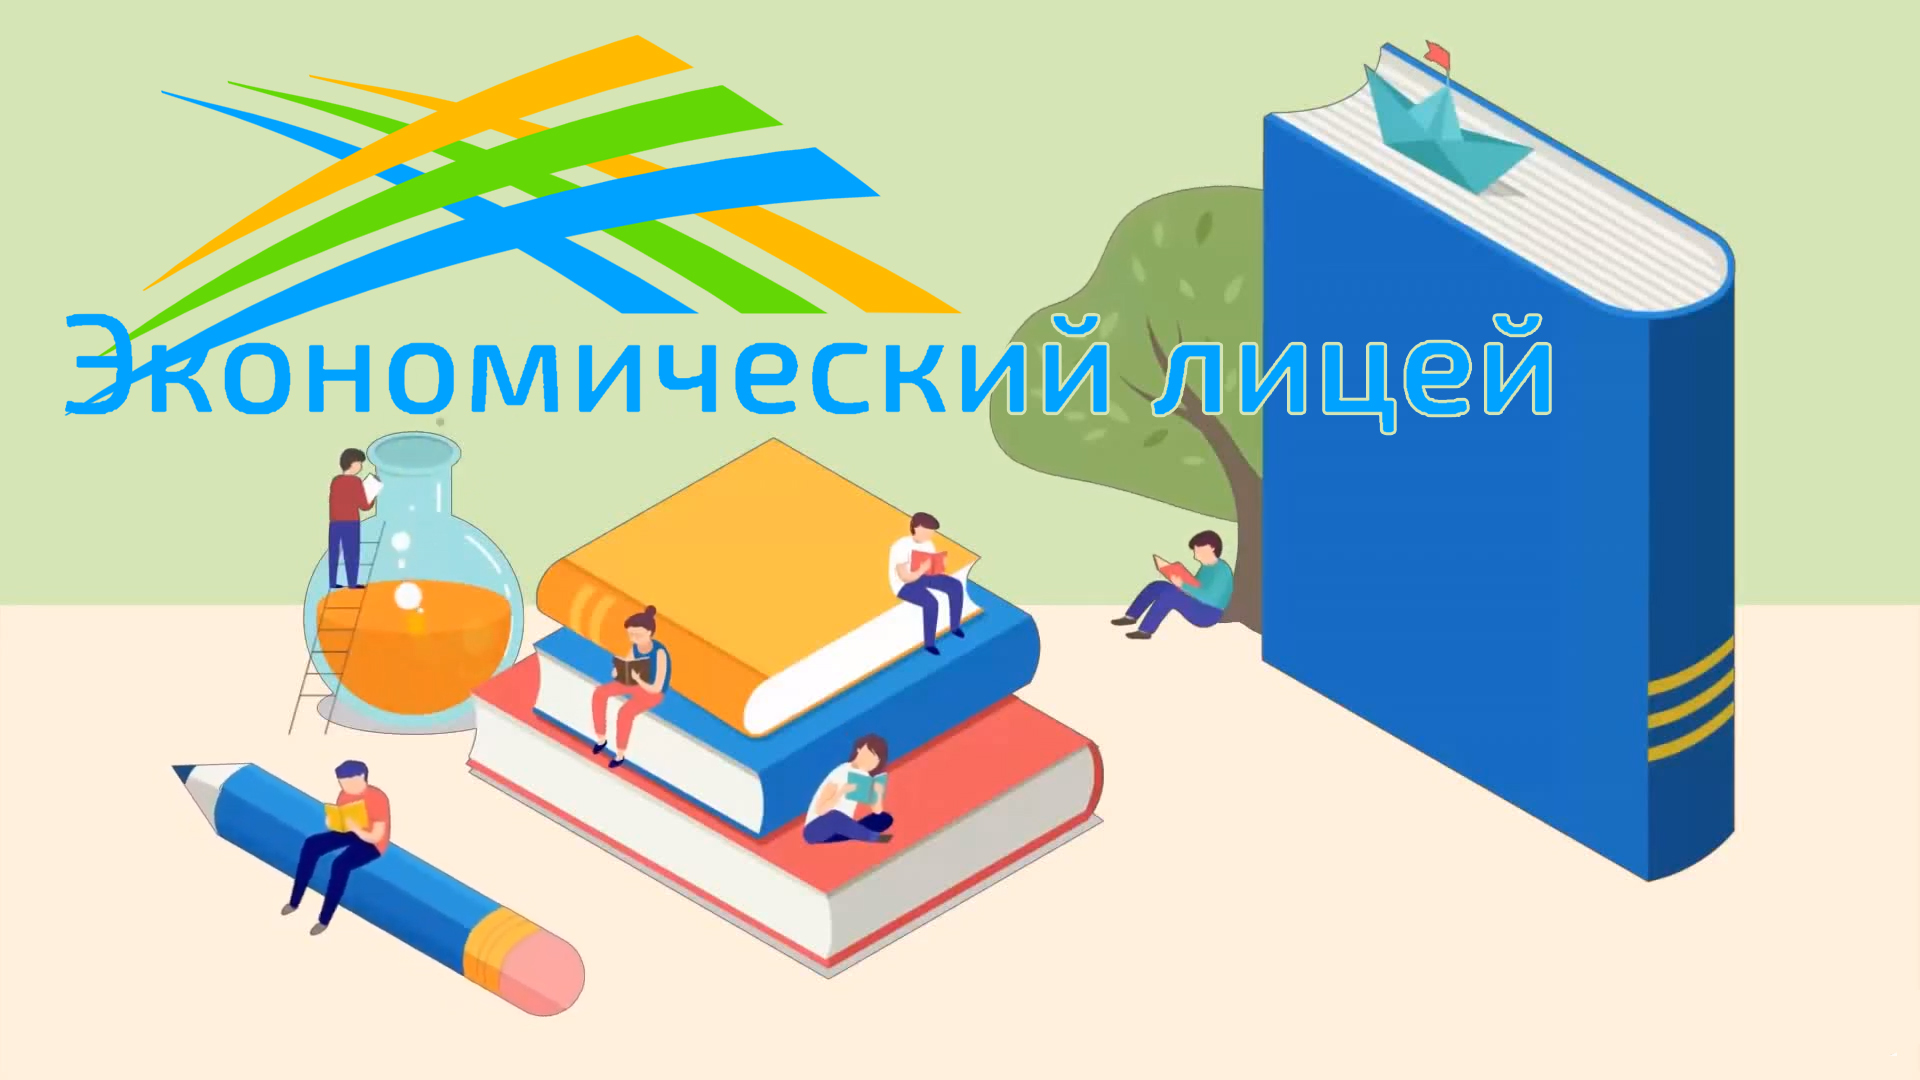 Победитель областного этапа Казахстанской интернет олимпиады